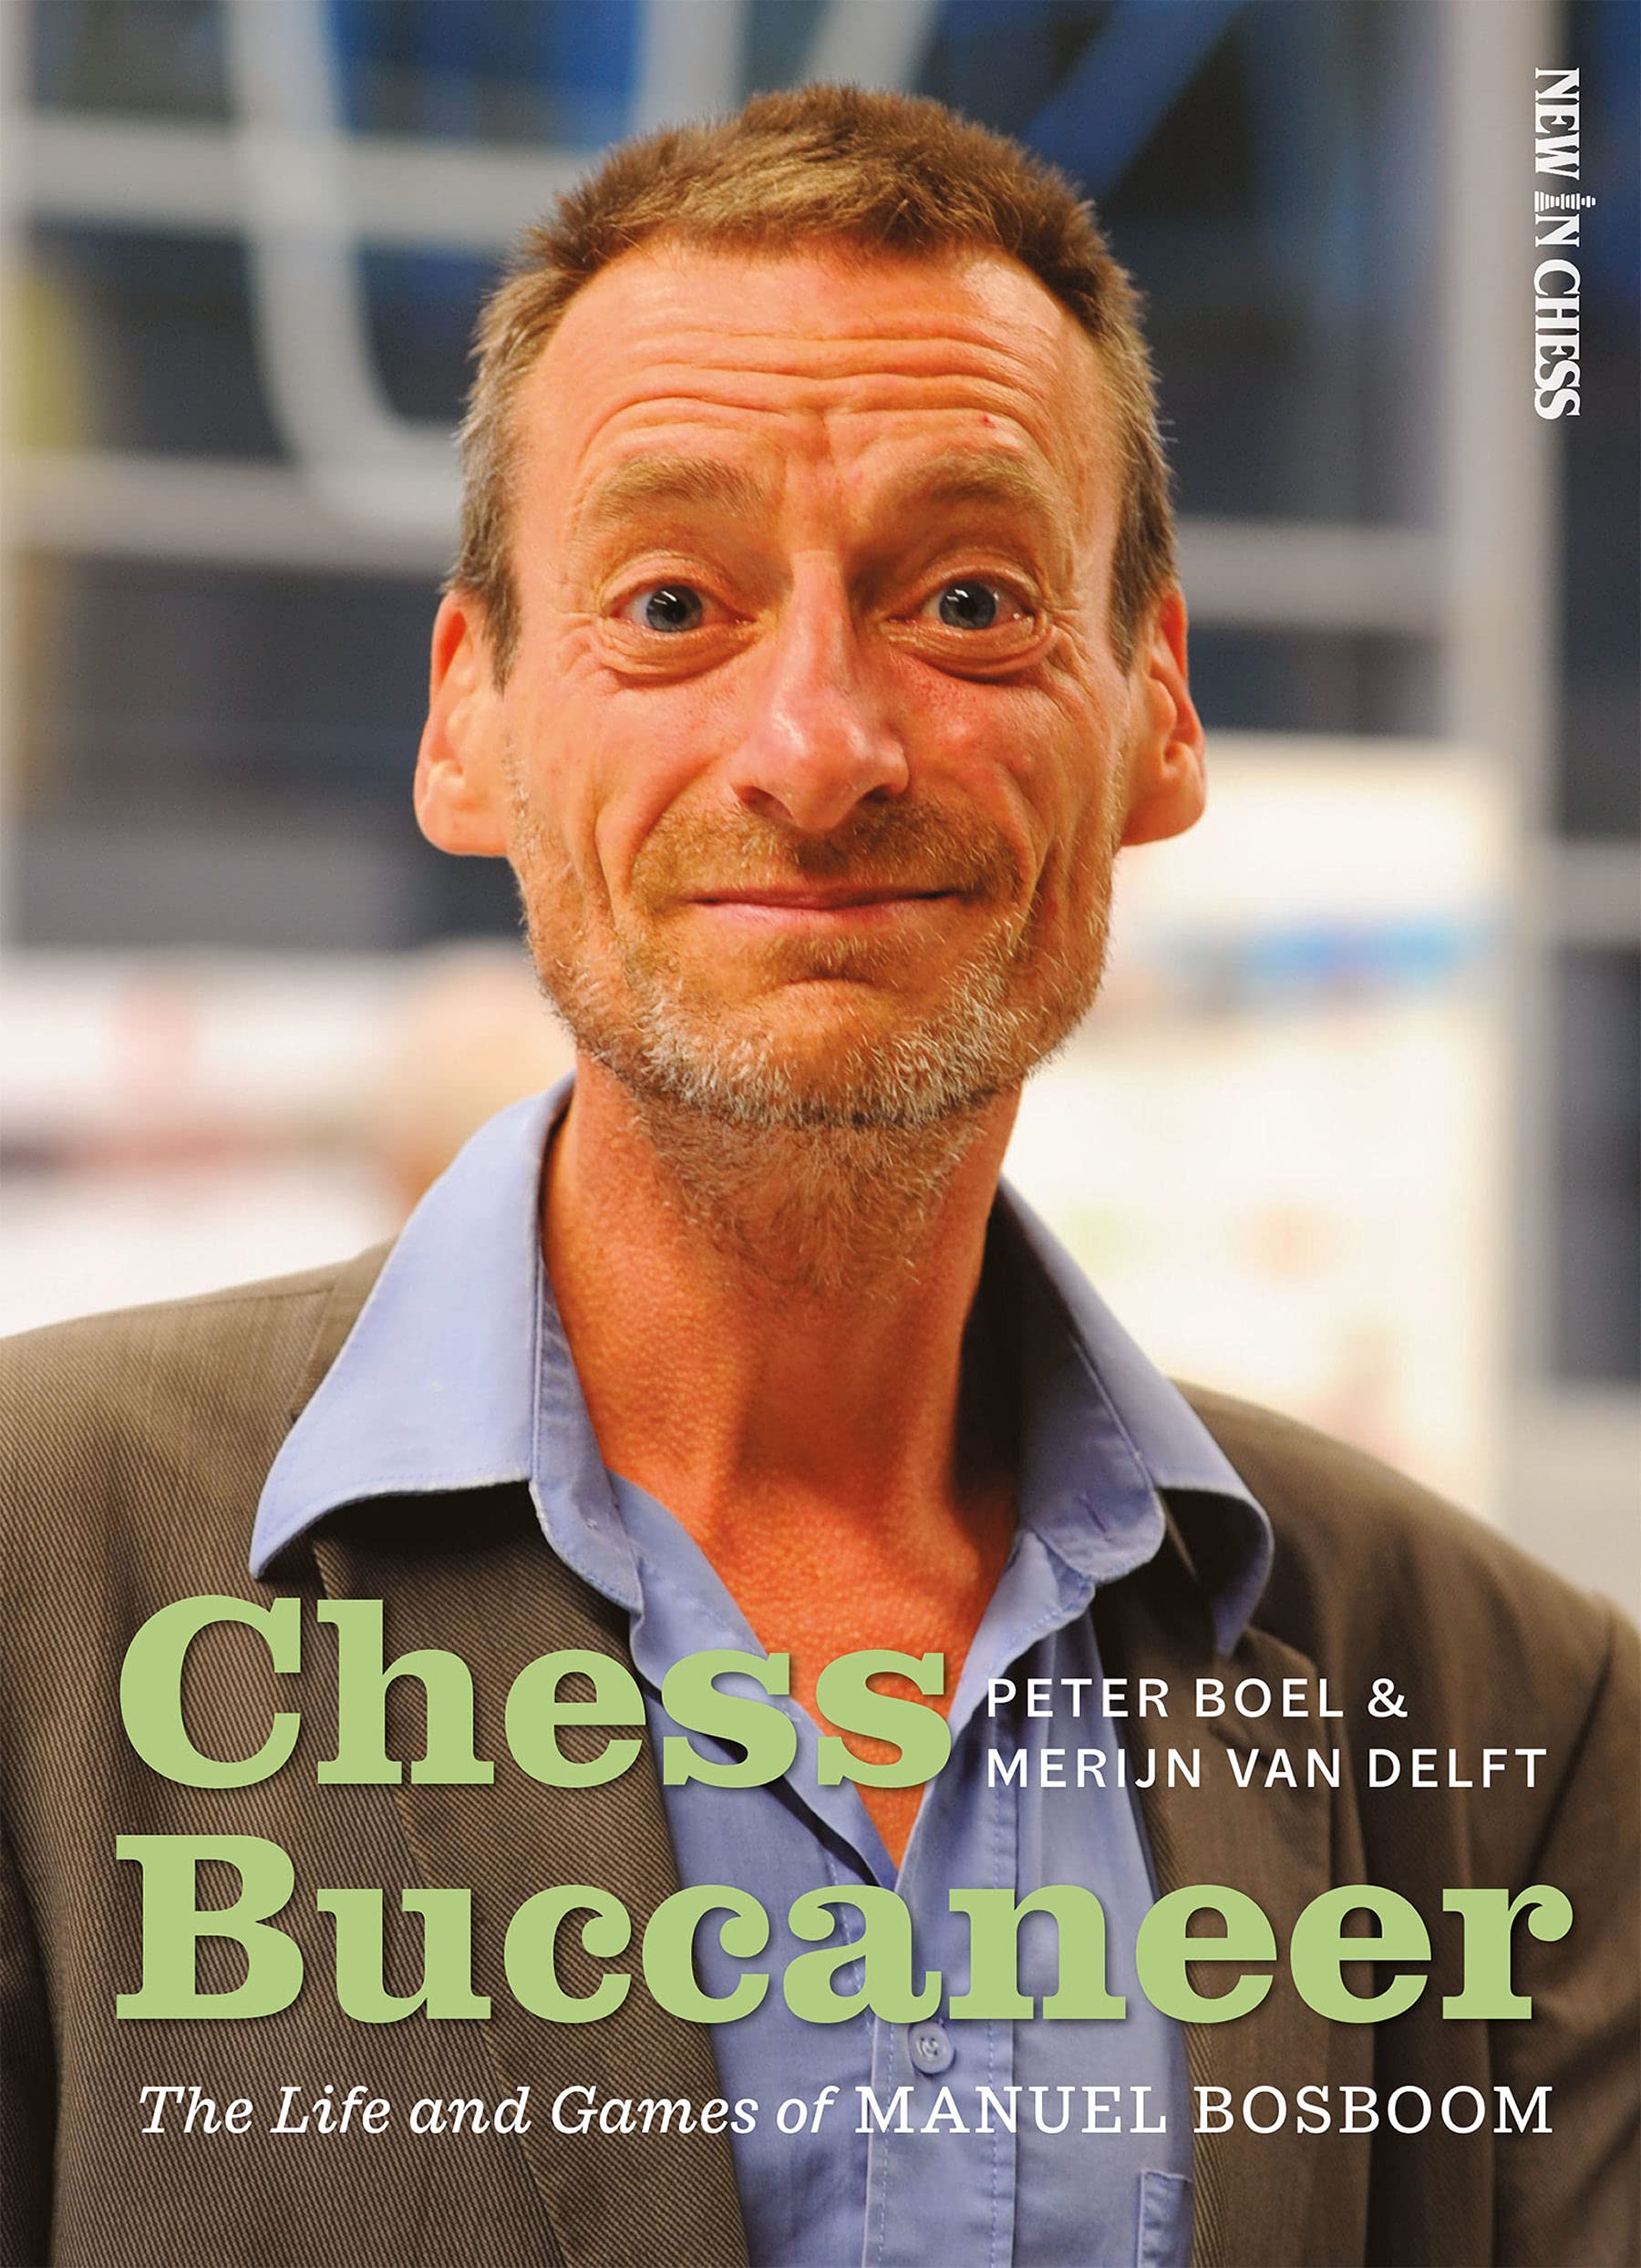 Chess Buccaneer: The Life and Games of Manuel Bosboom, Merijn van Delft & Peter Boel, New in Chess, 31st December 2021, ISBN-13 ‏ : ‎ 978-9056919818